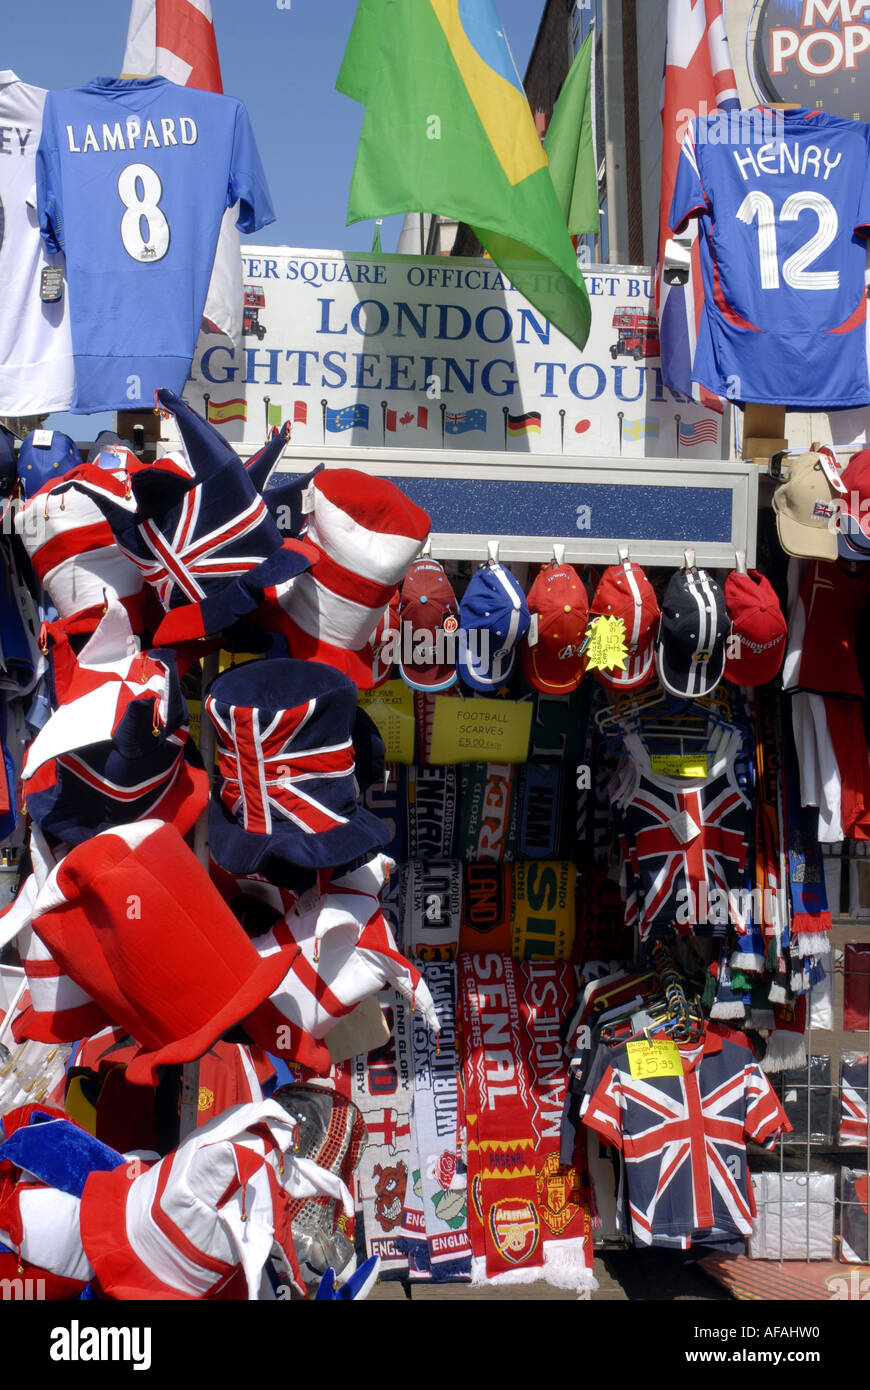 Leicester Square décroche à vendre les articles destinés aux touristes. W1 London, Angleterre, Royaume-Uni. Banque D'Images